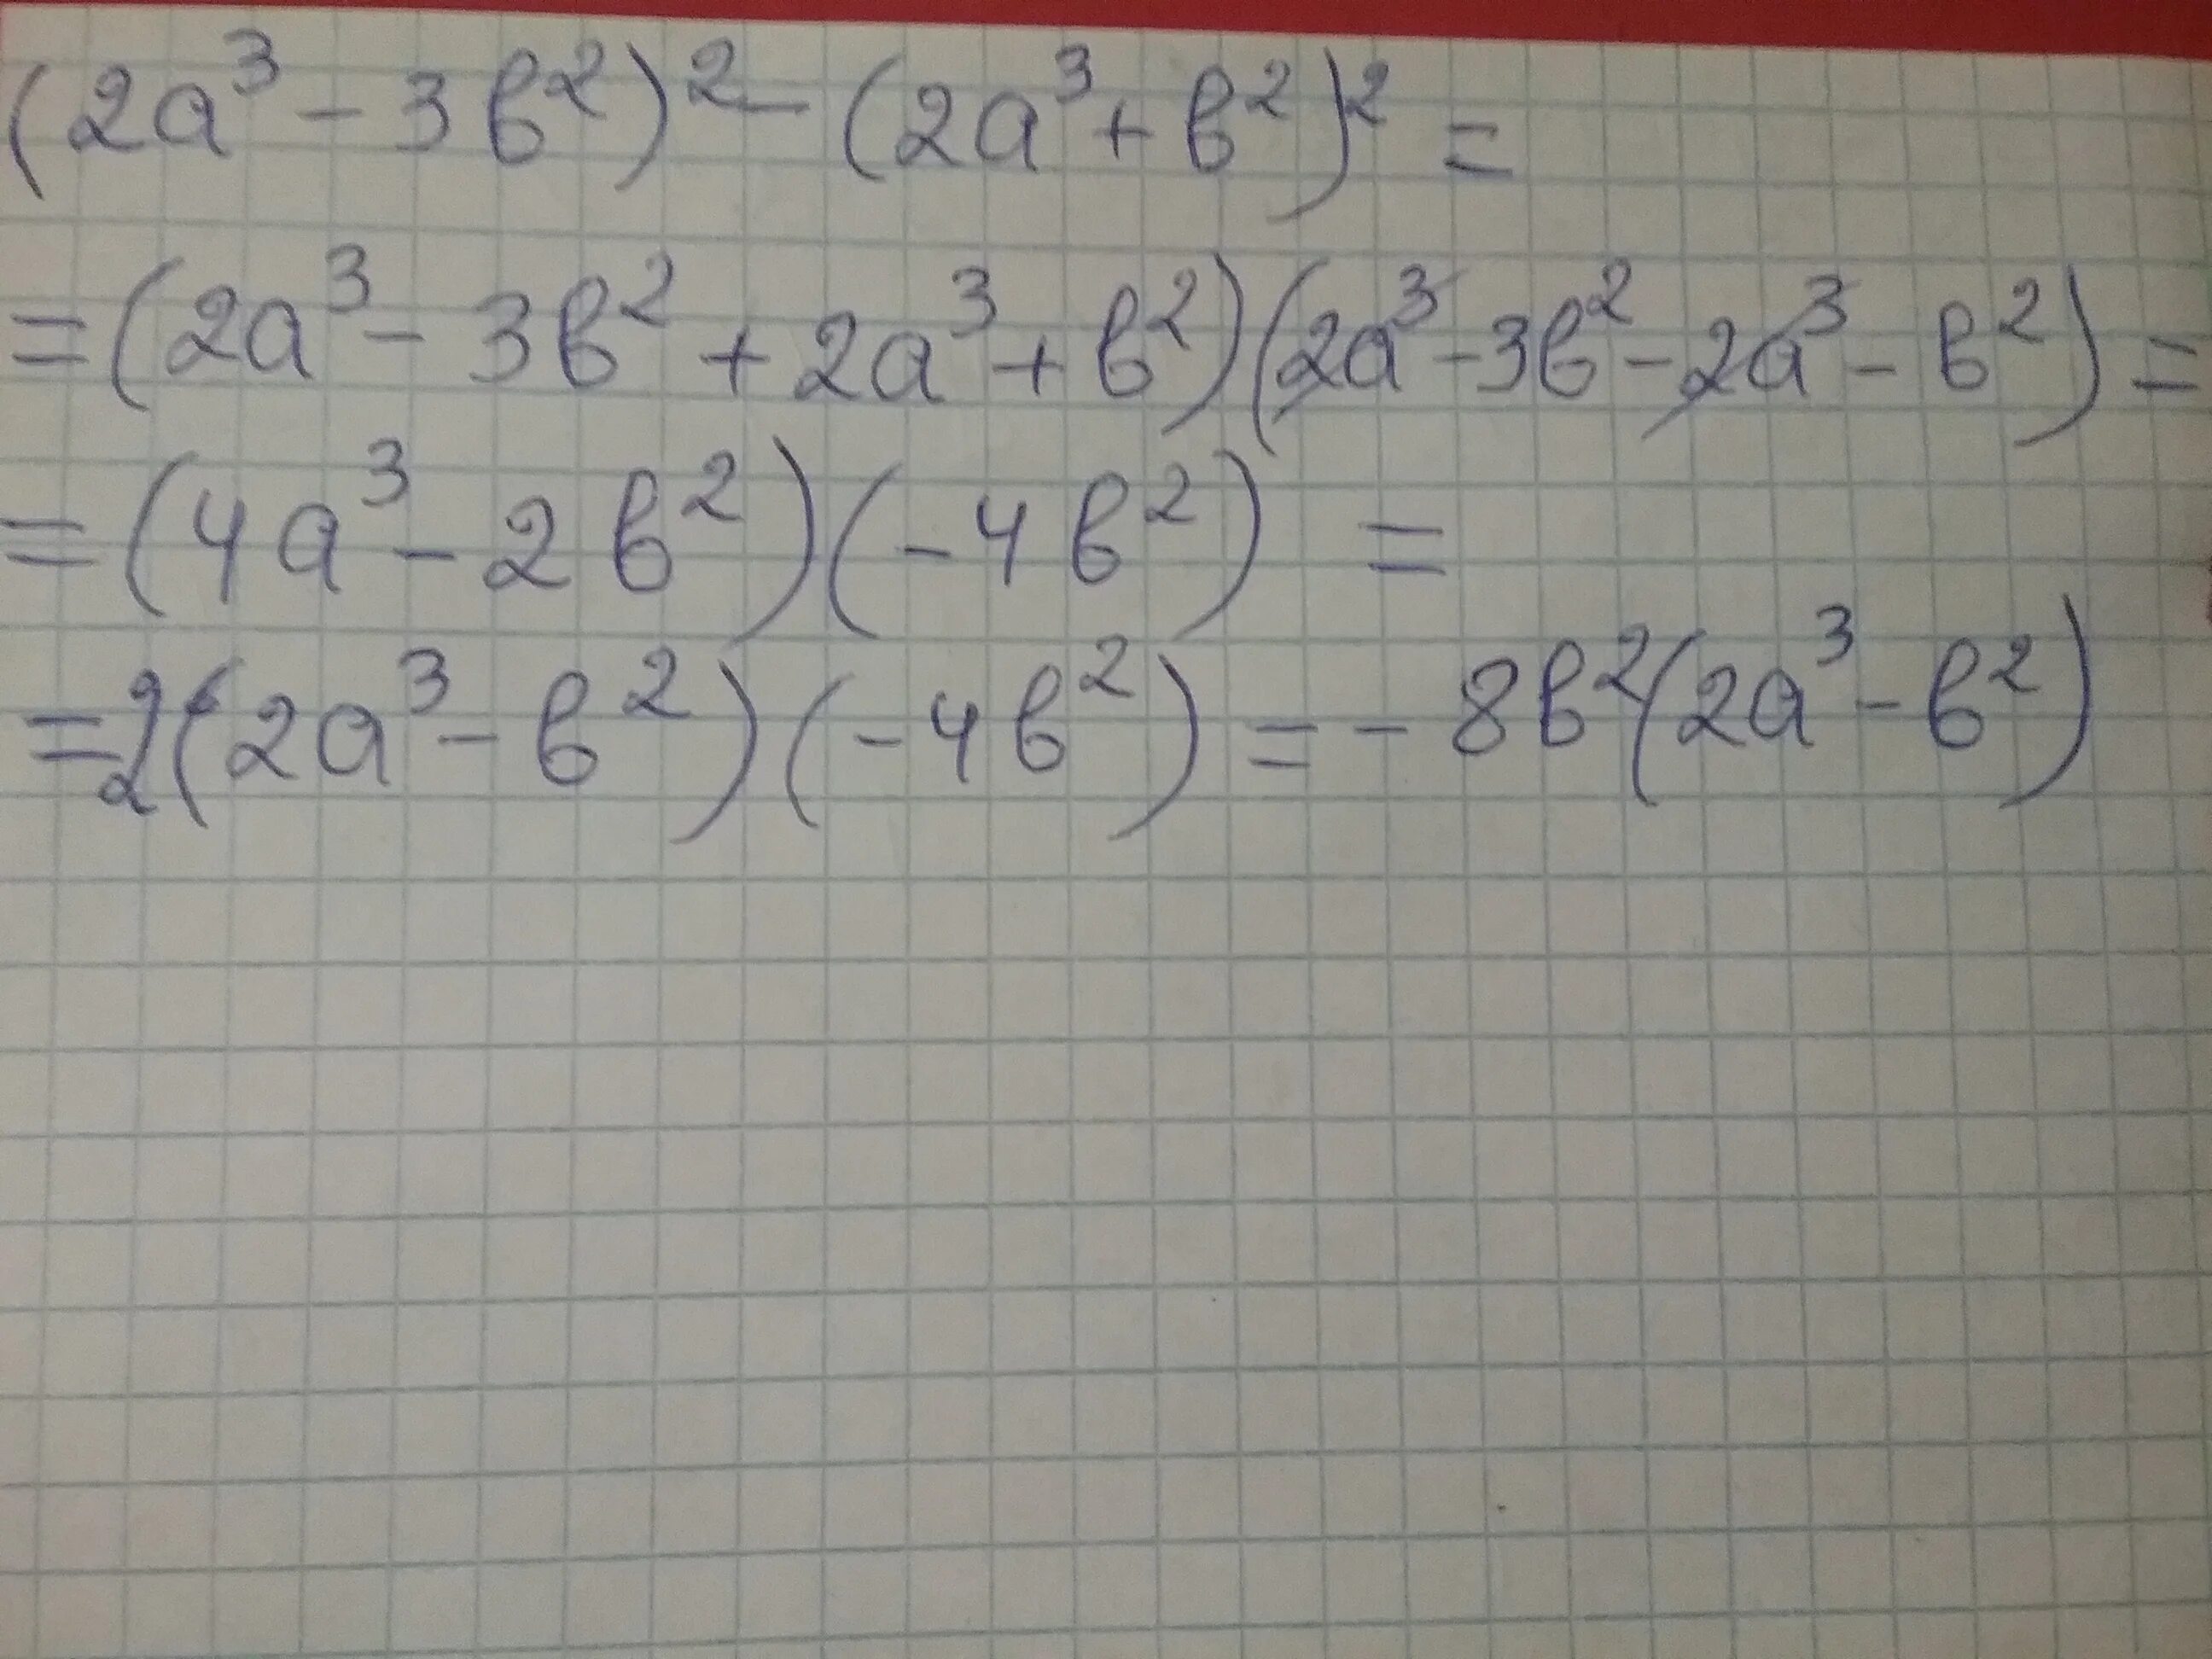 (A-B)(2a+3b). 3(A+2)+B(A+2). 2a-3/2a-b-2/b. (A+B)^3/B^2-A^2.